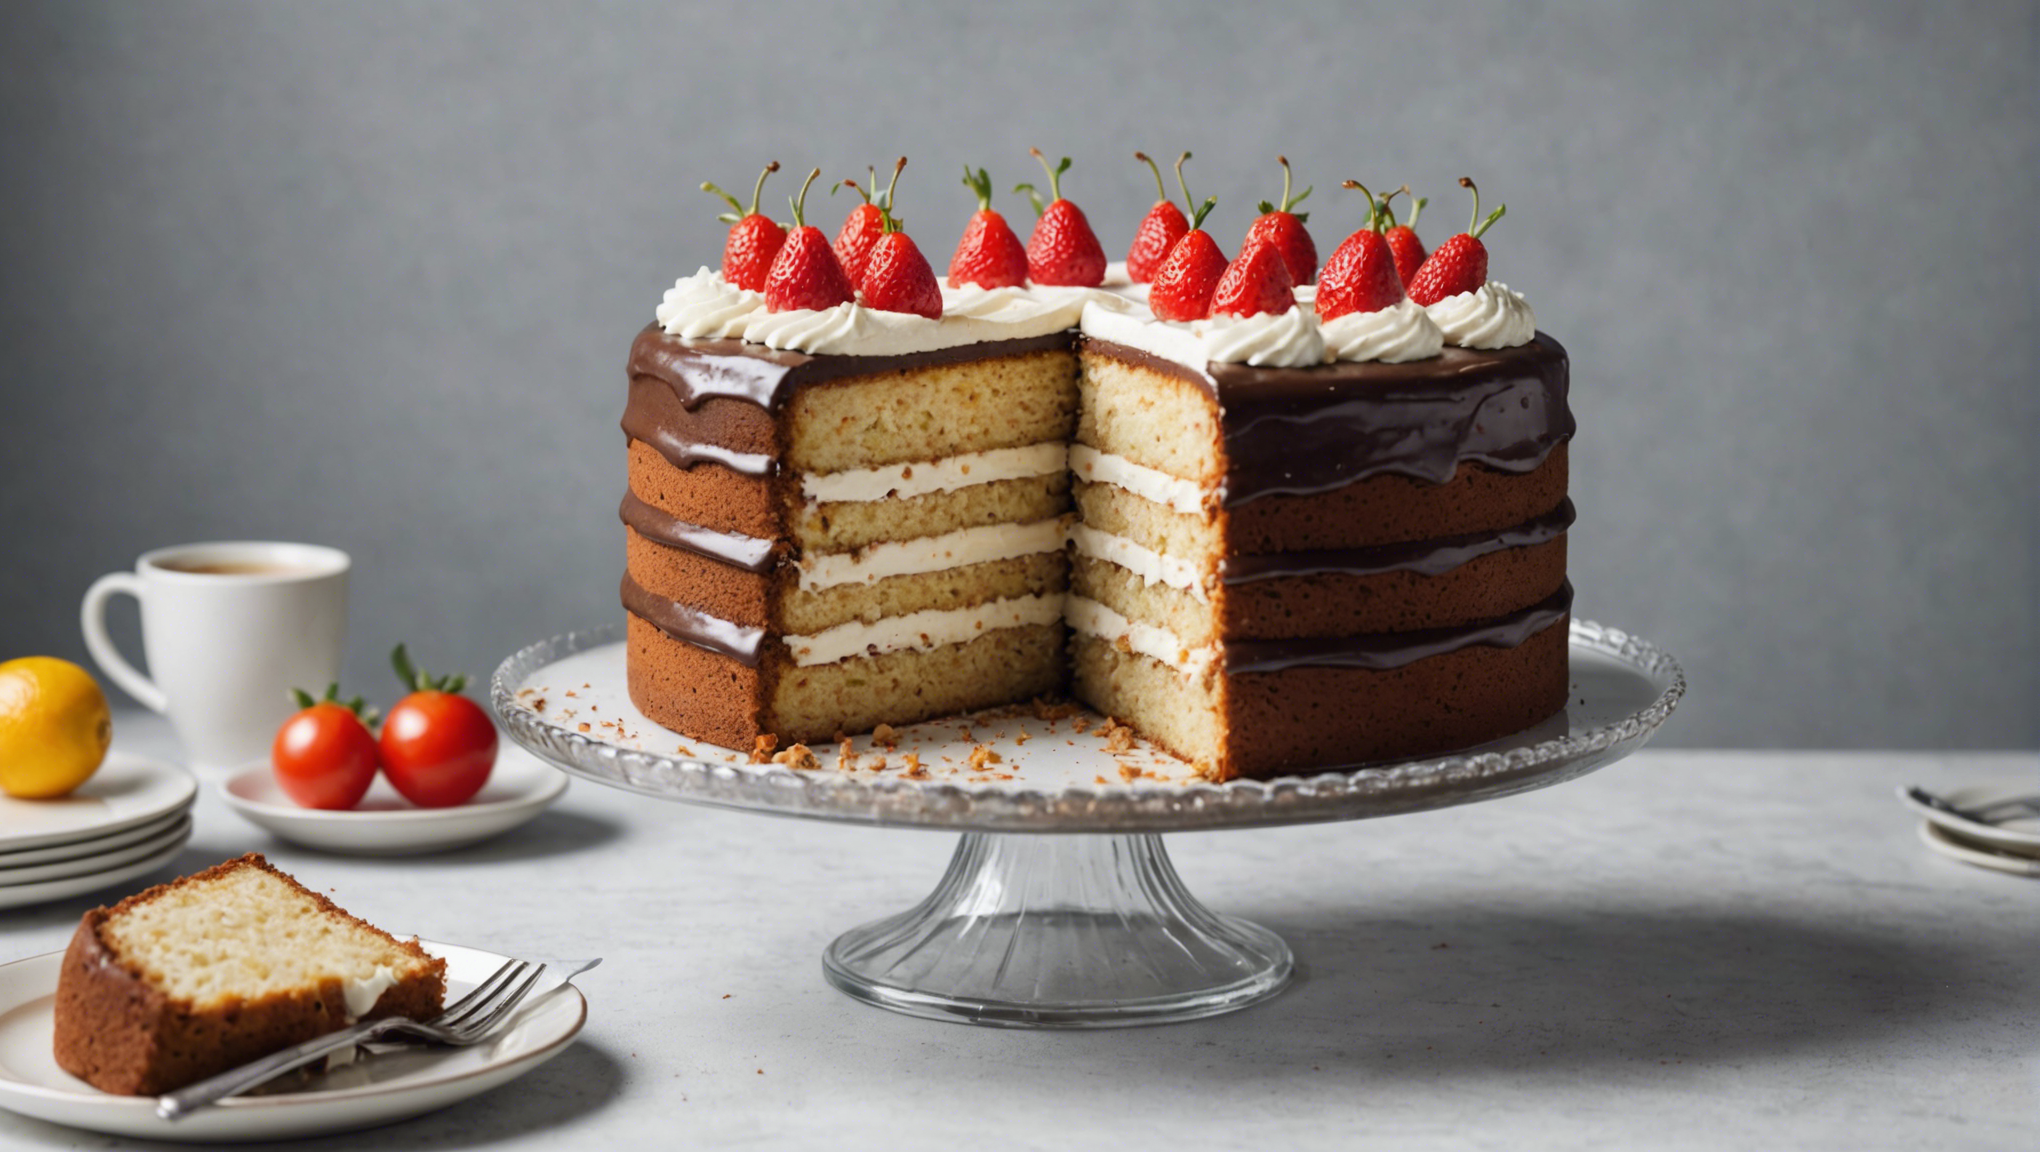 découvrez les raisons pour lesquelles votre gâteau ne gonfle pas et apprenez comment y remédier. conseils et astuces pour obtenir un gâteau parfaitement gonflé.